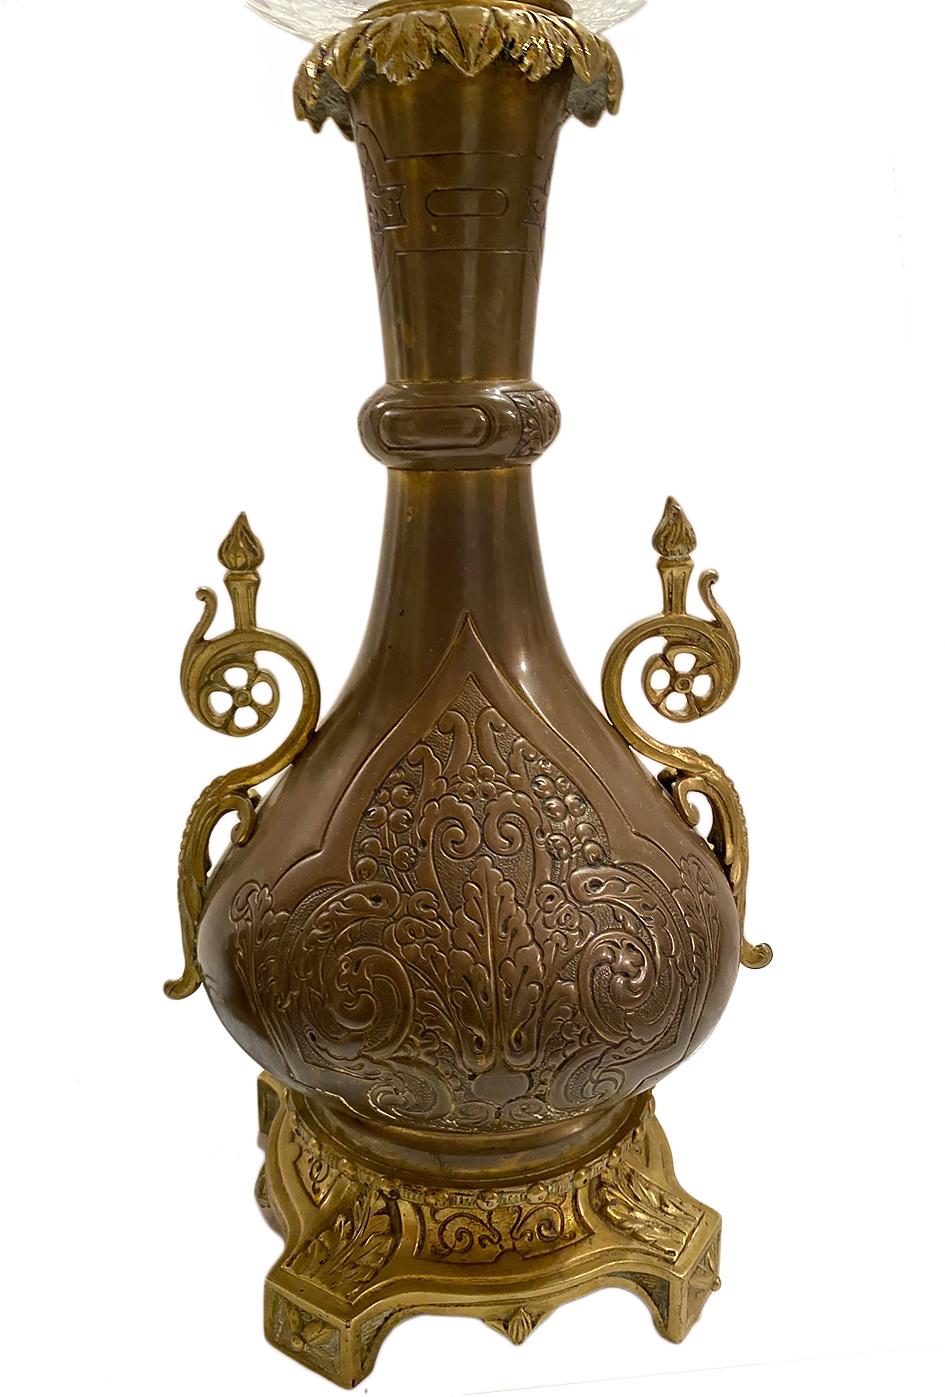 Paire de lampes de table en bronze patiné du 19e siècle avec globes en verre taillé et décor d'arabesques sur le corps.

Mesures :
Hauteur du corps 21
Diamètre (au plus large) 7